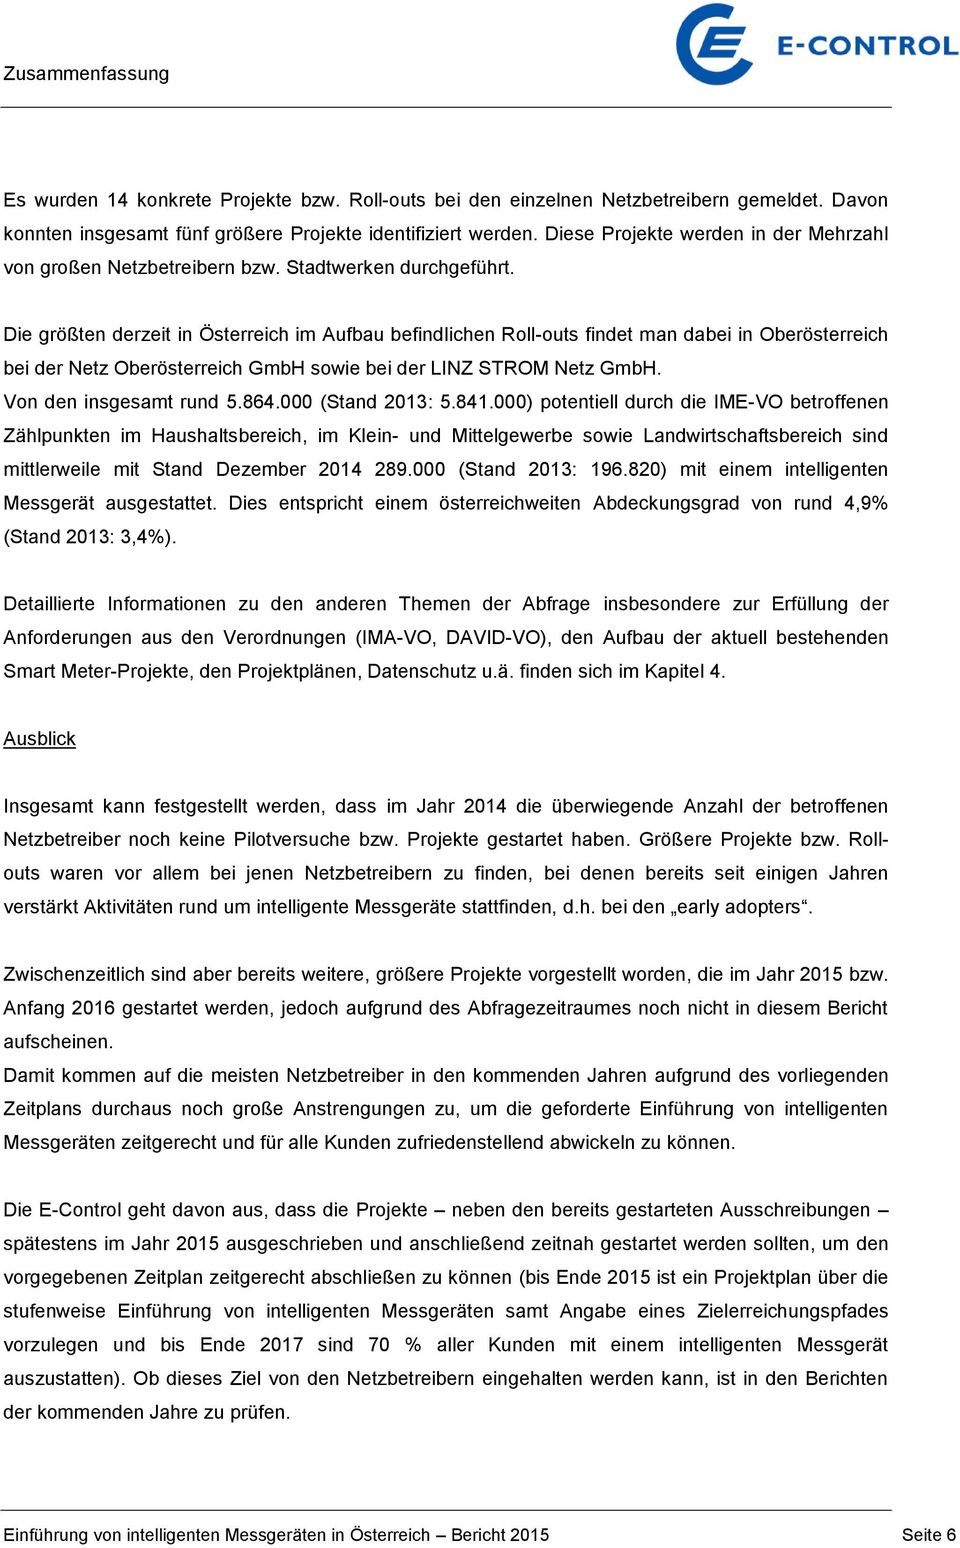 Die größten derzeit in Österreich im Aufbau befindlichen Roll-outs findet man dabei in Oberösterreich bei der Netz Oberösterreich GmbH sowie bei der LINZ STROM Netz GmbH. Von den insgesamt rund 5.864.